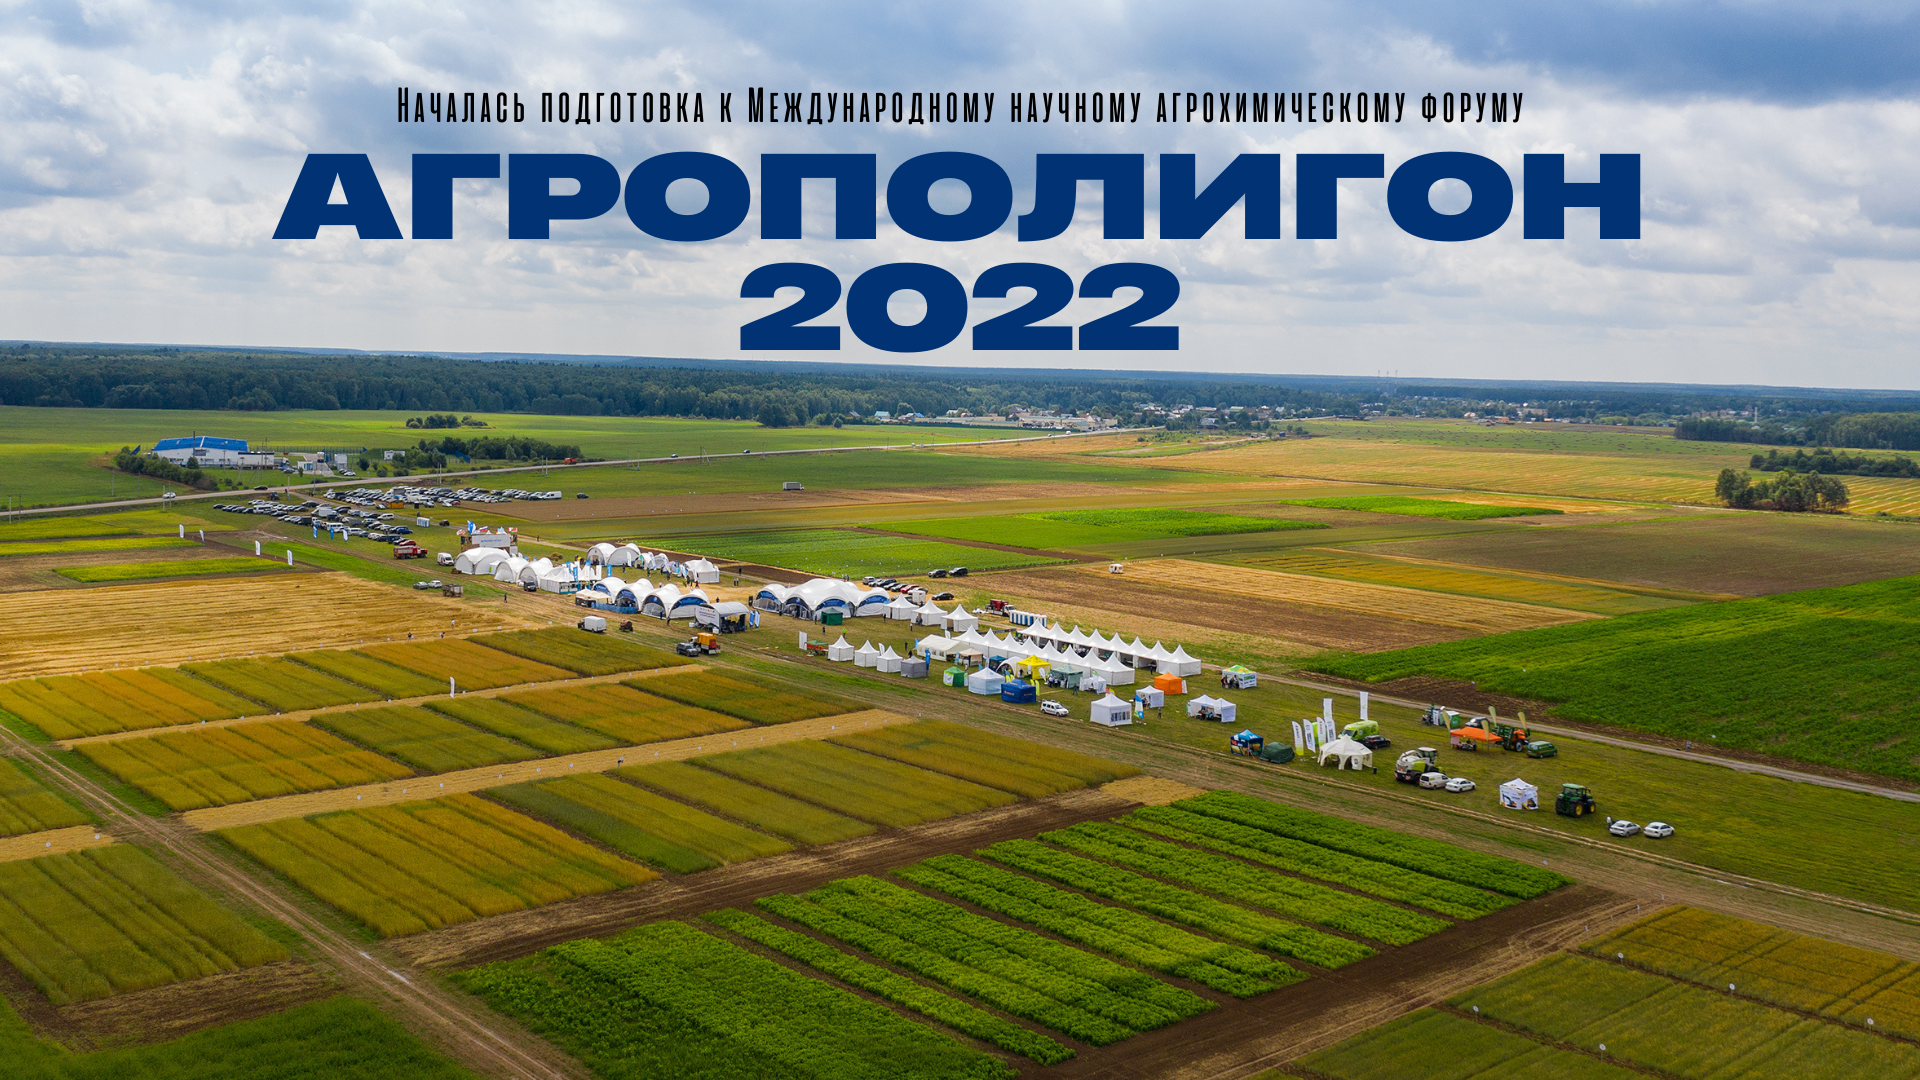 Опытная станция ВНИИ агрохимии начала подготовку к Международному научному агрохимическому форуму  «Агрополигон 2022»